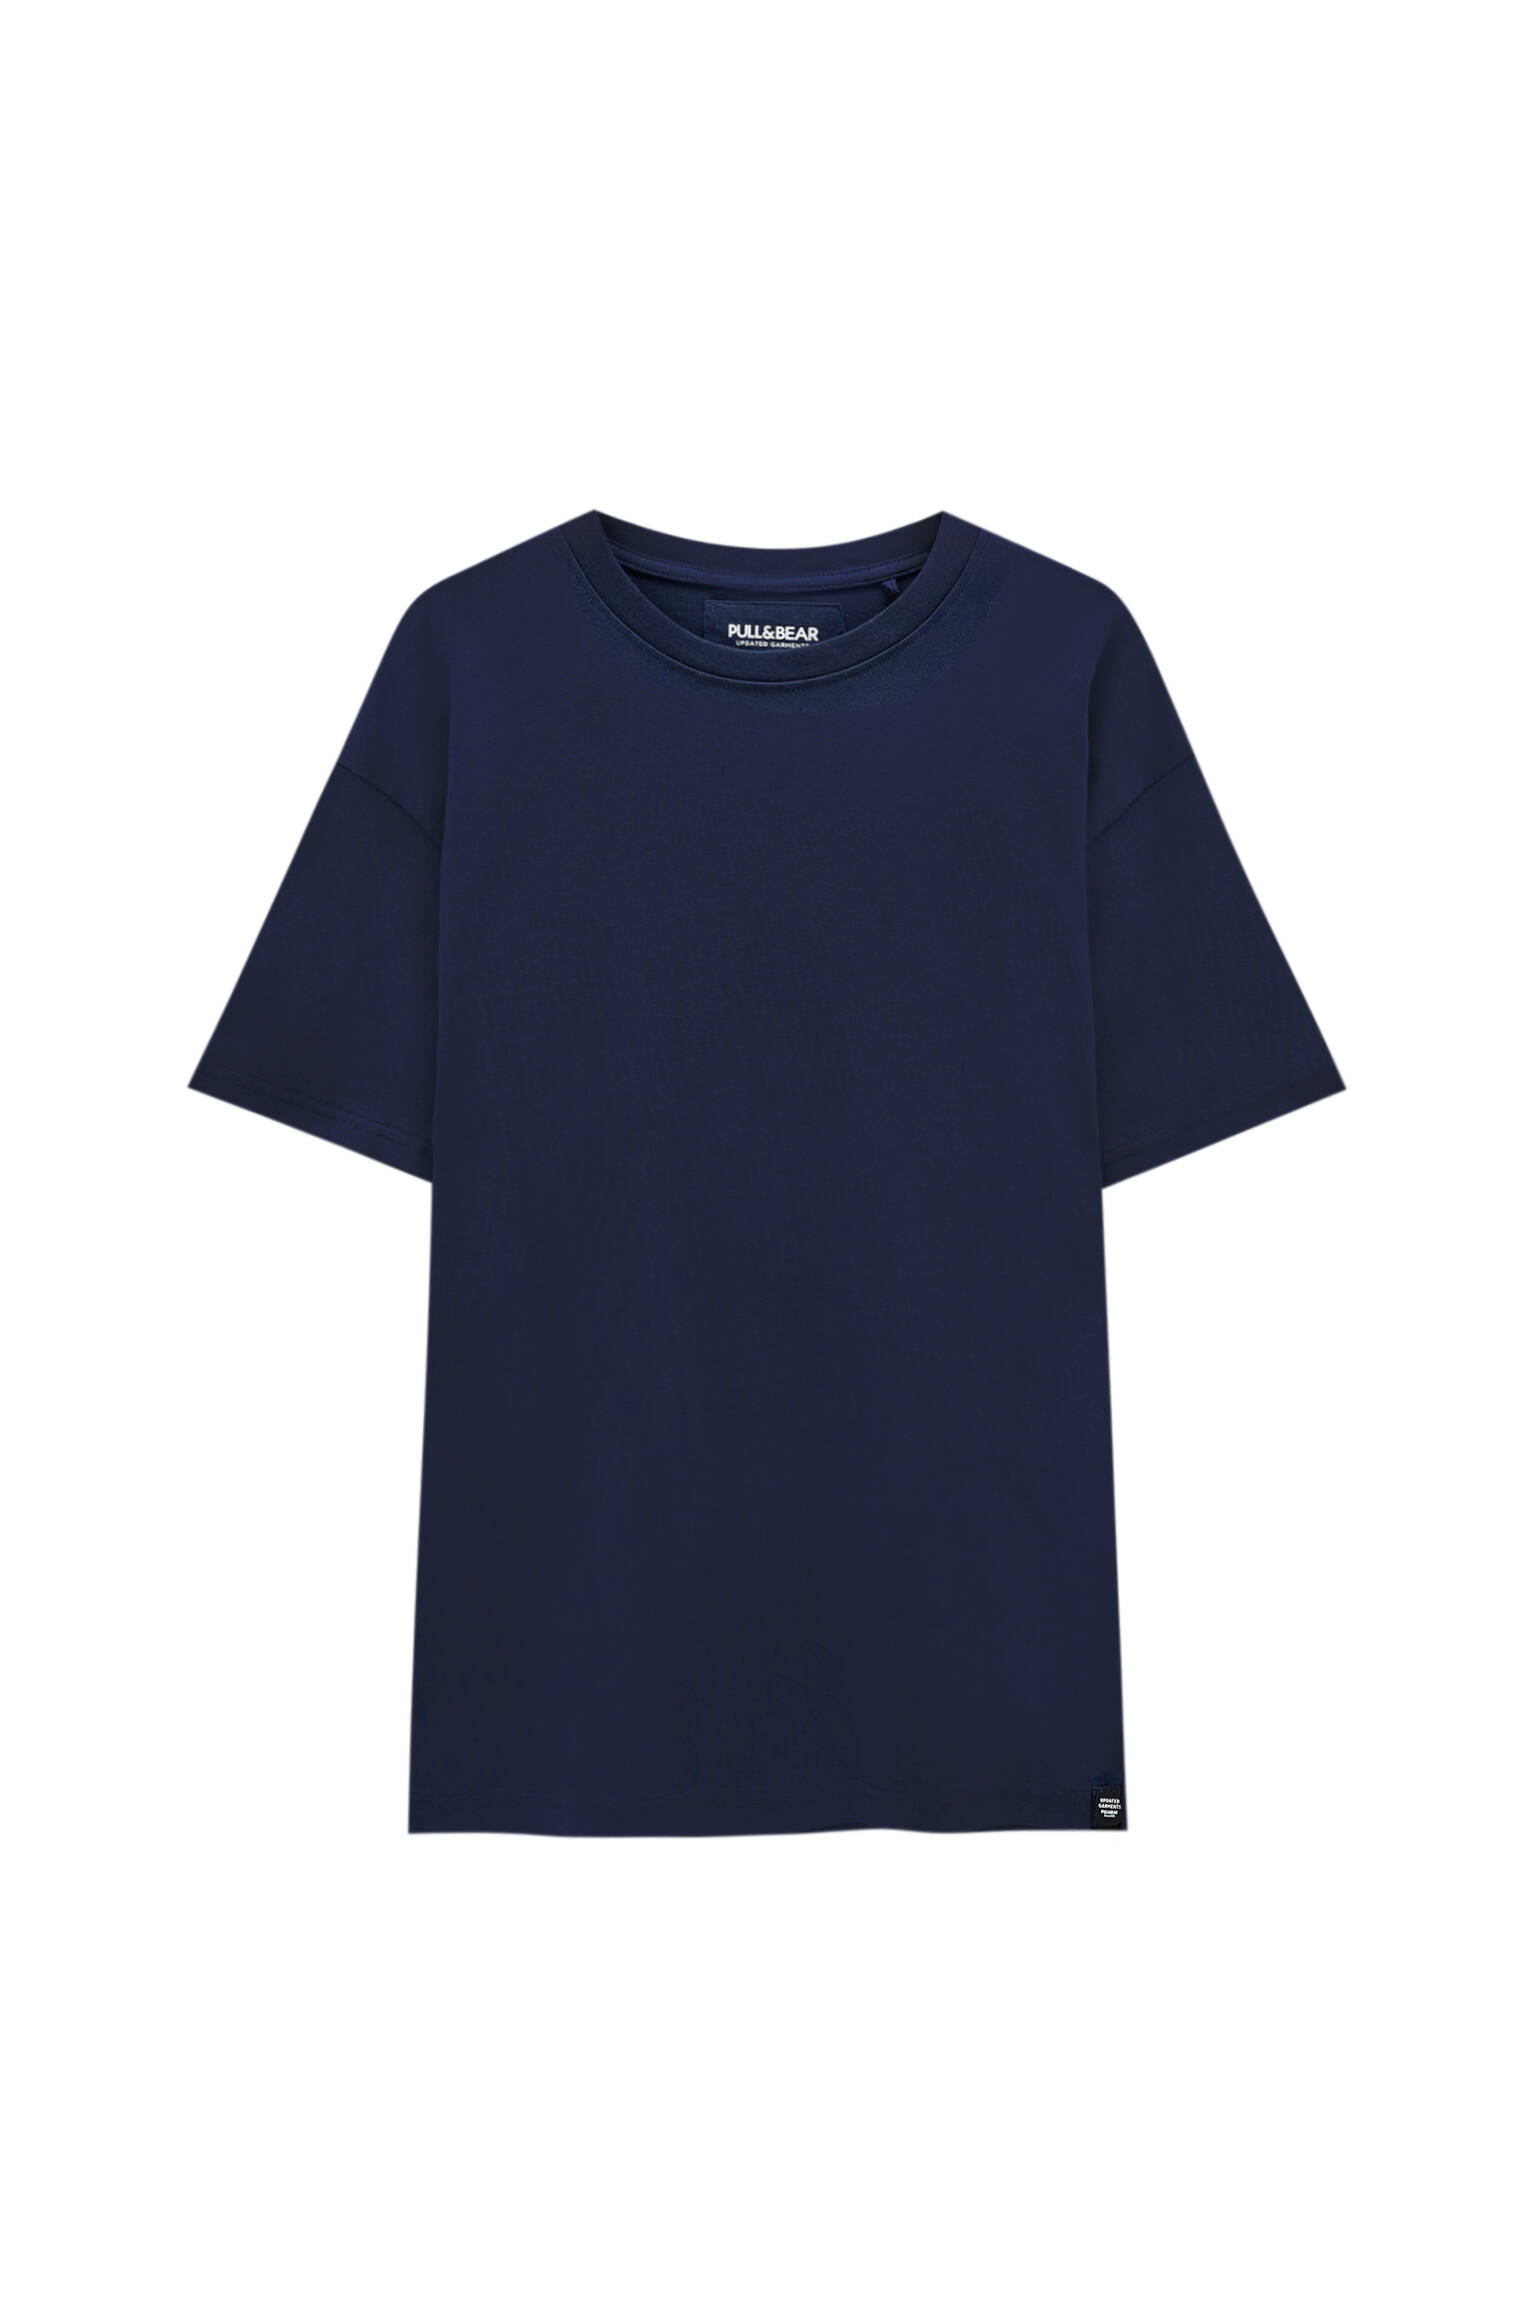 Pull&bear Homme T-shirt Relaxed Fit Oversize En Coton Premium, à Manches Courtes Et Col Rond, Disponible En Plusieurs Couleurs. Bleu Marine L